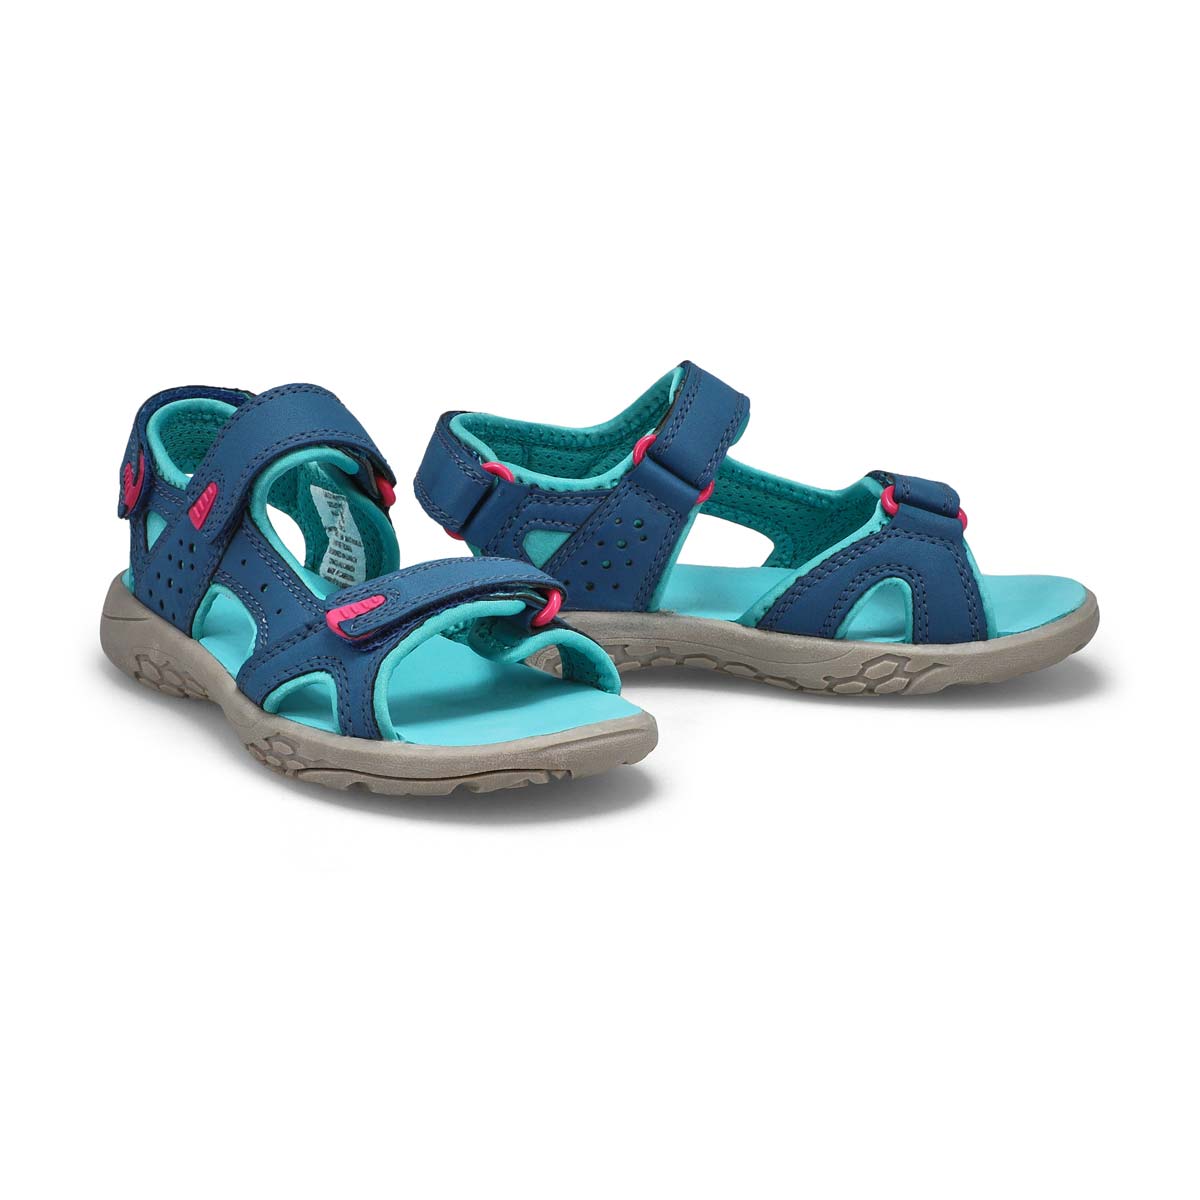 Girls' Daisy Sport Sandal - Navy/Turquoise